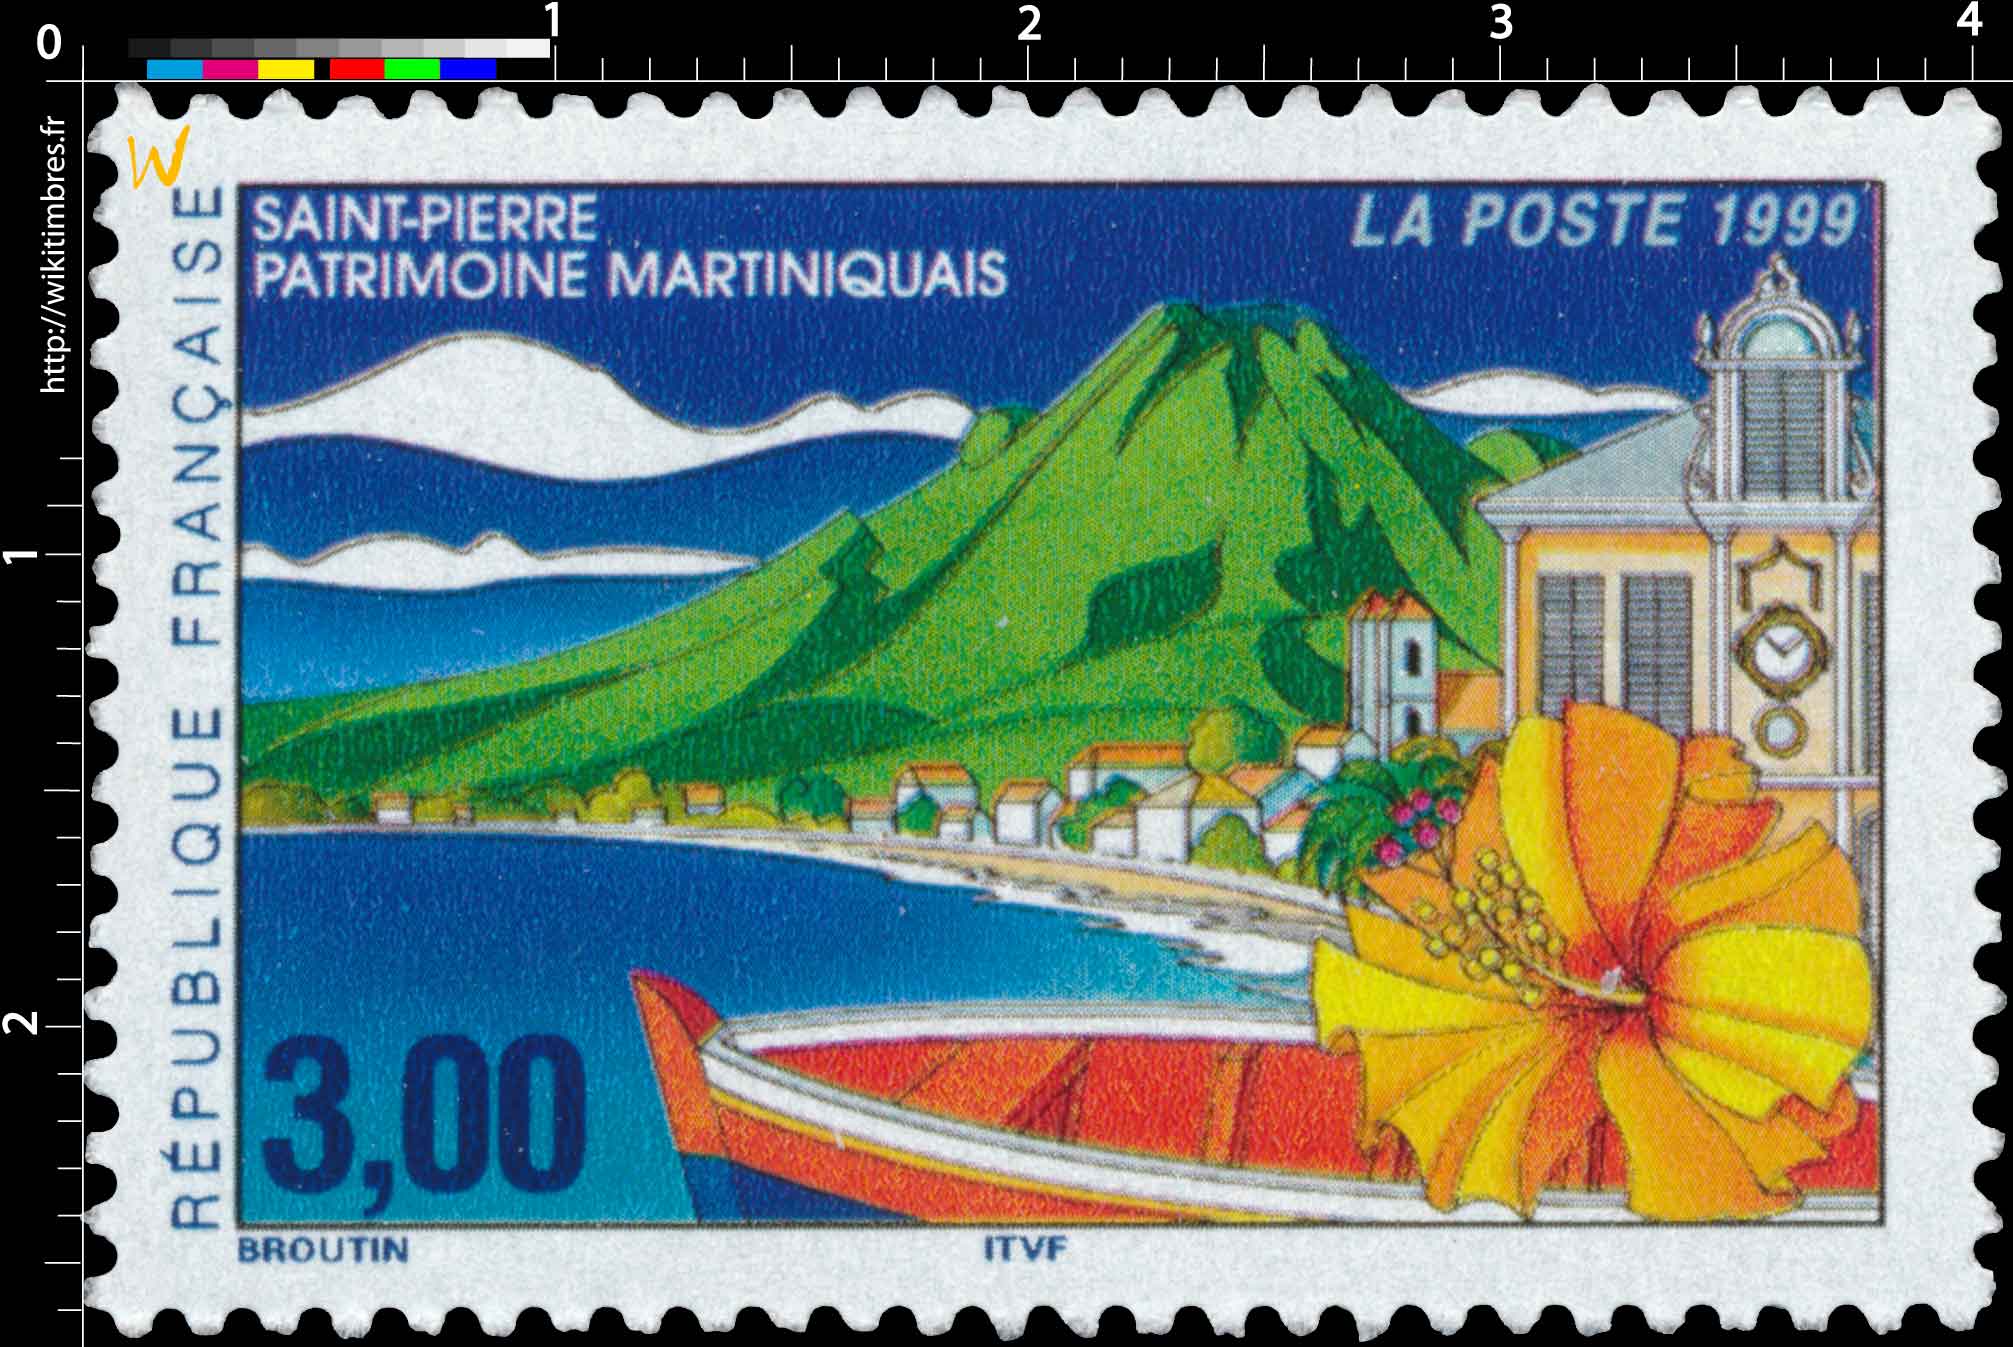 1999 SAINT-PIERRE PATRIMOINE MARTINIQUAIS